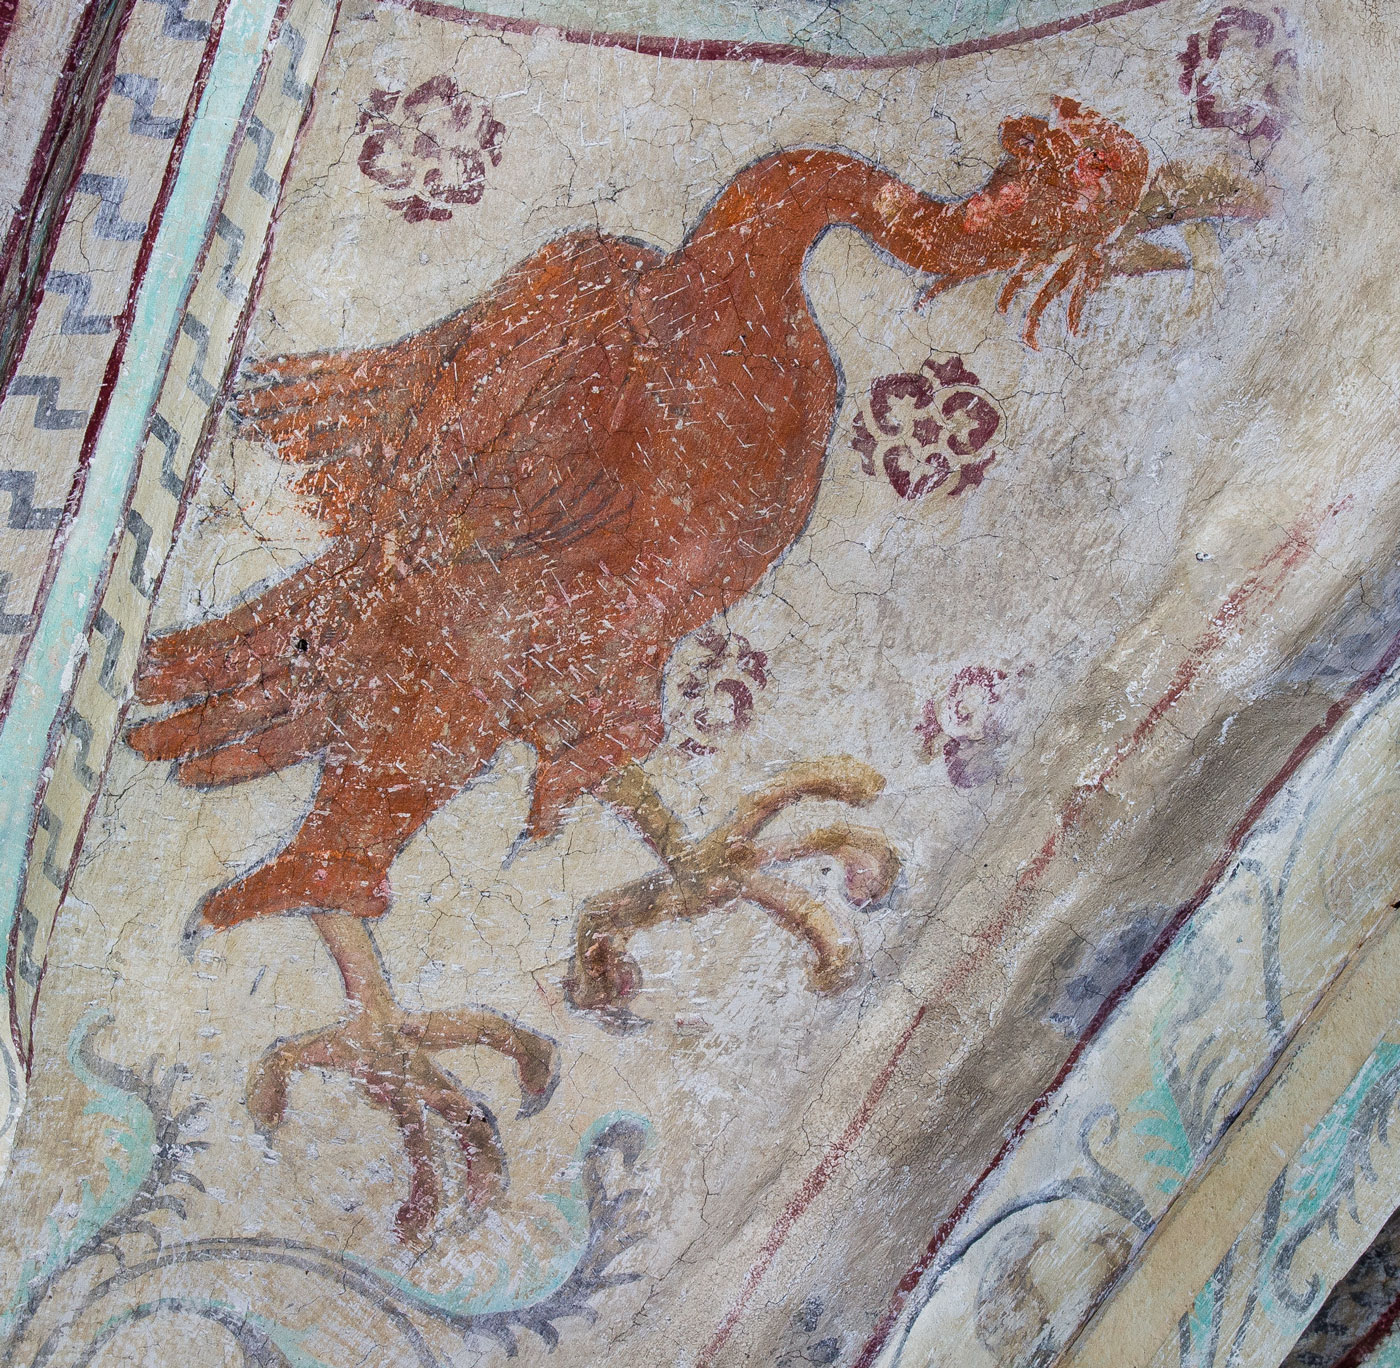 Stor röd fågel med tupphuvud på lång hals - Österunda kyrka